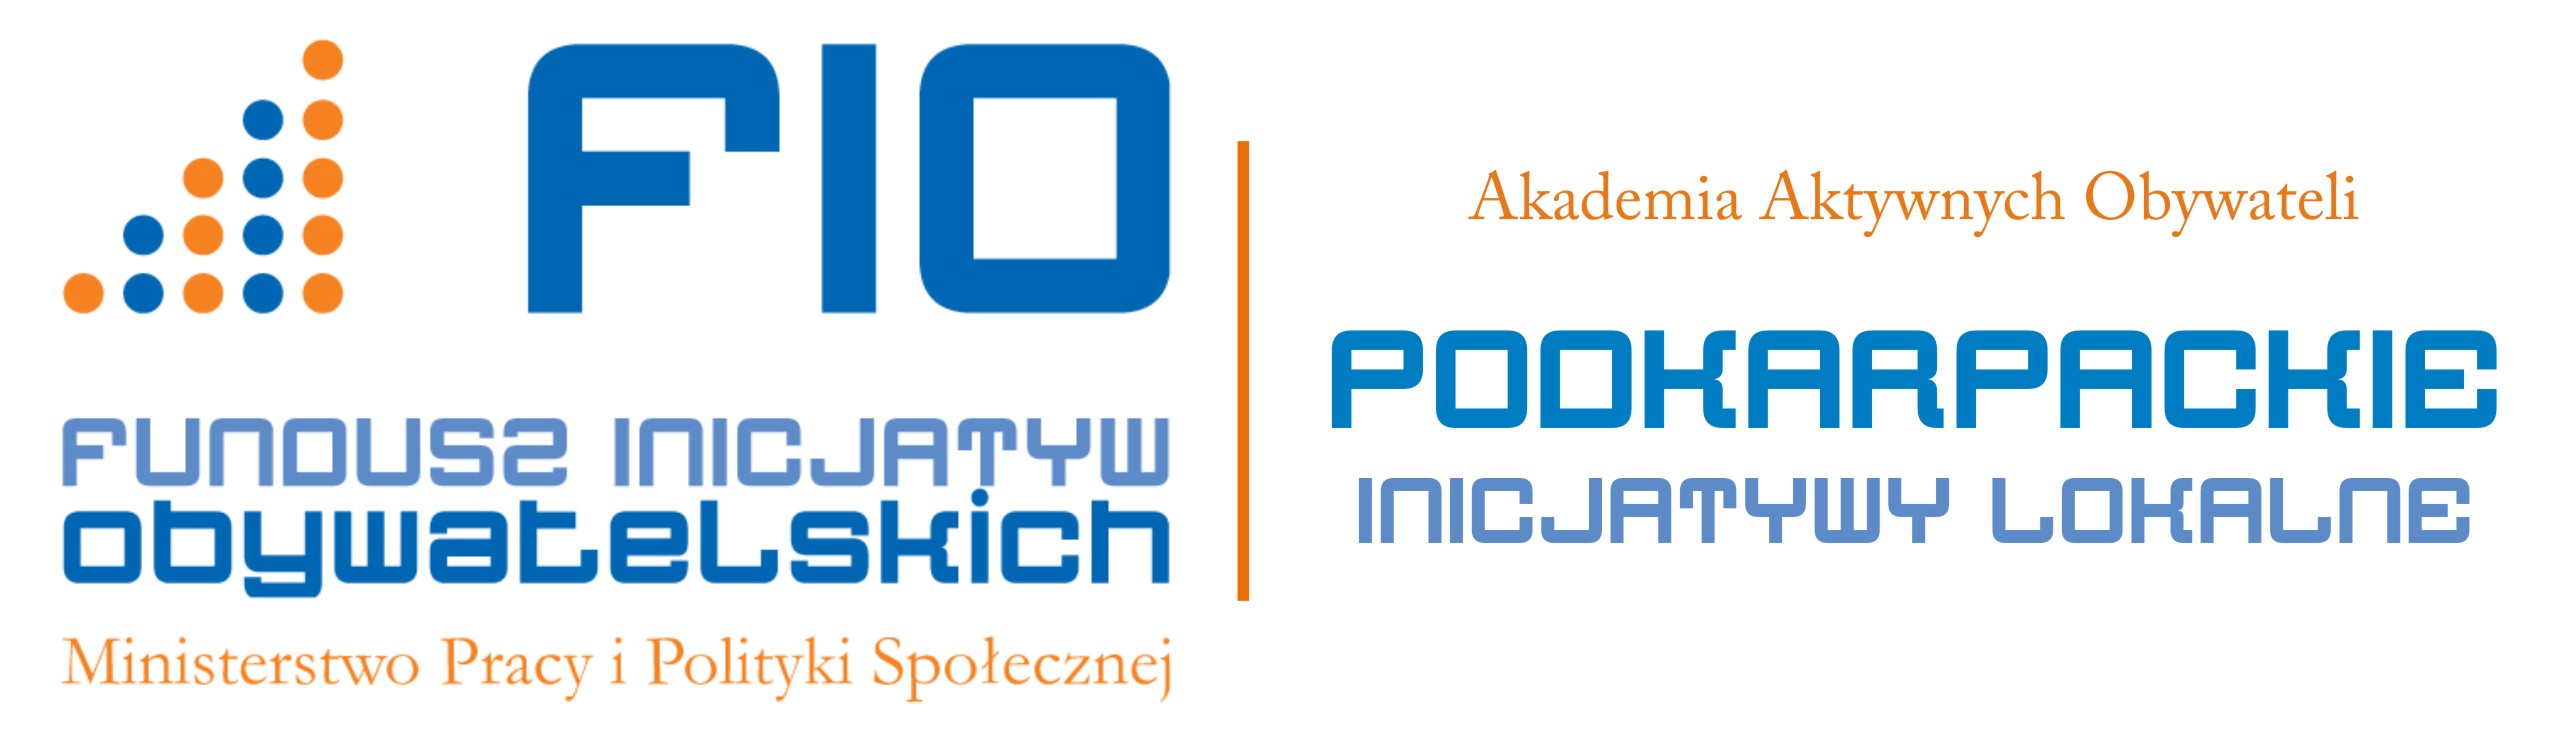 logo_podkarpackie_inicjatywy_lokalne_oryginal (1)